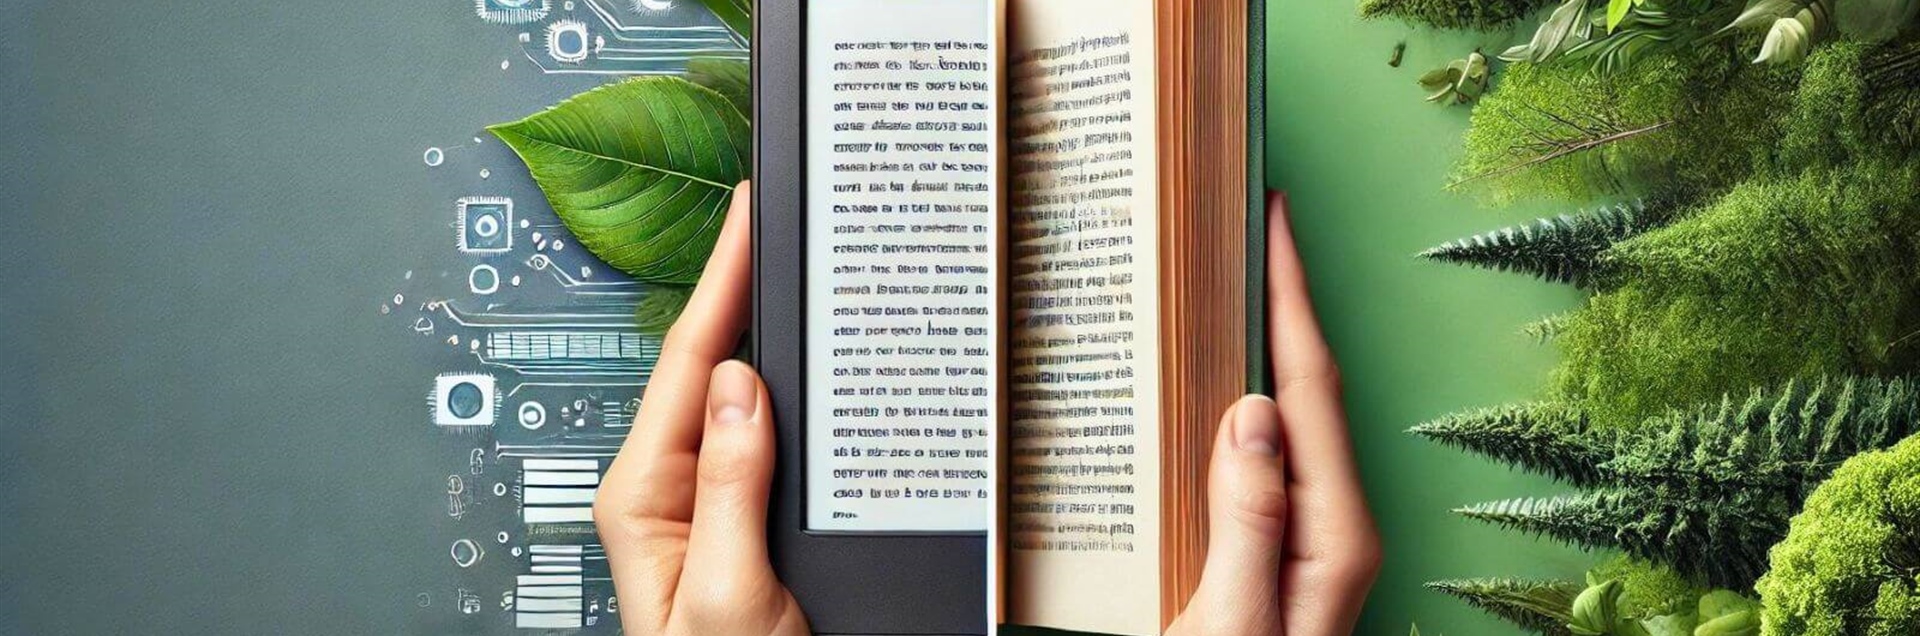 E-Books vs Papierbücher: Welche ist die nachhaltigere Wahl?